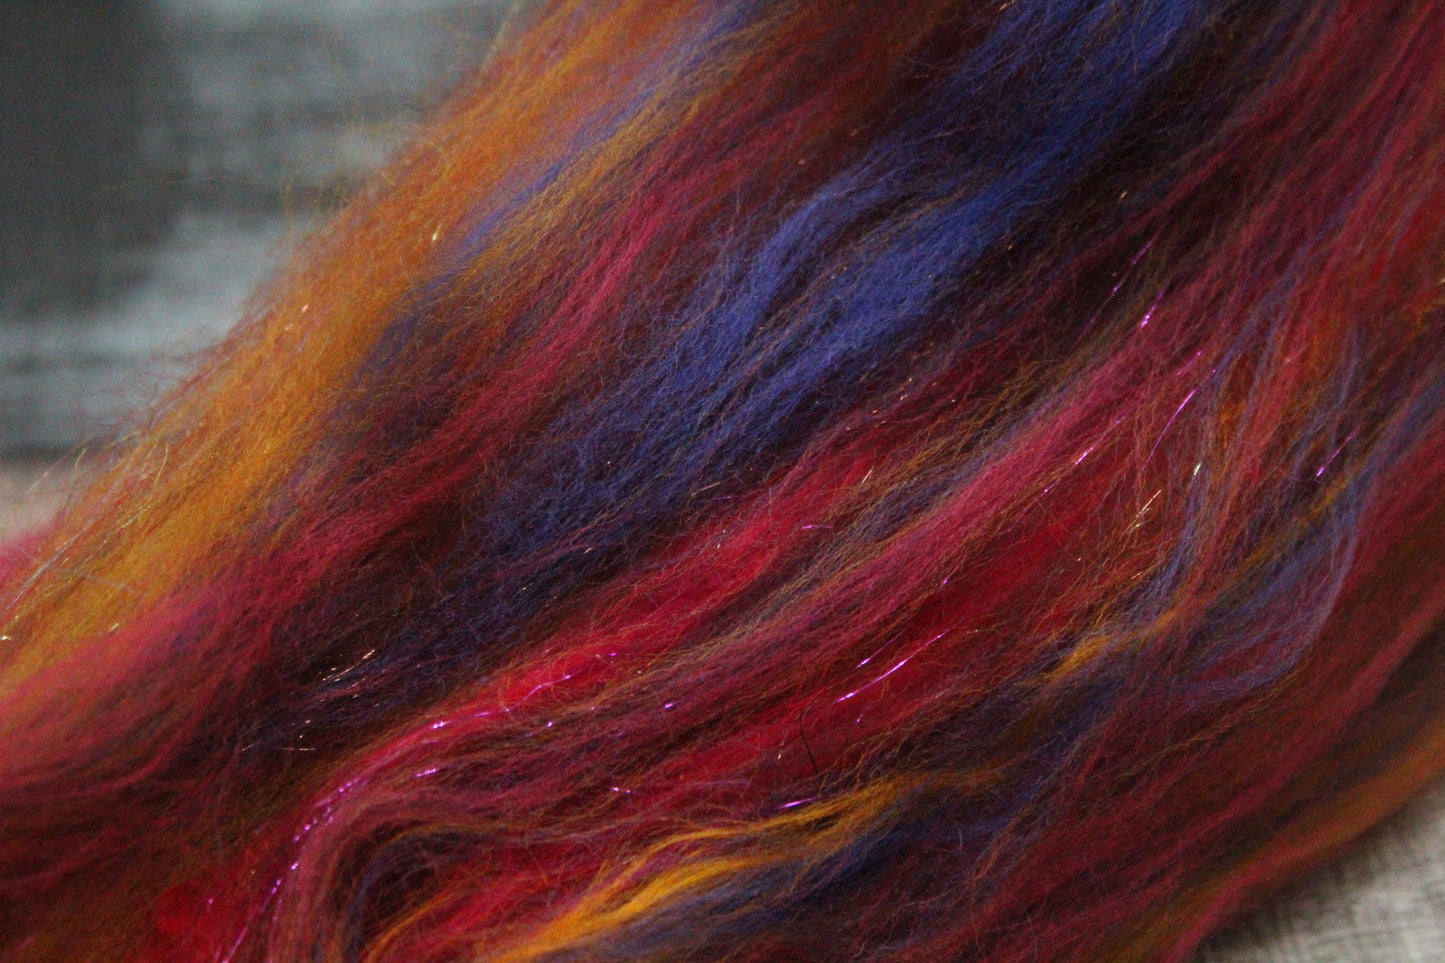 Merino Wool Blend - Red Brown Orange - 24 grams / 0.8 oz  - Fibre for felting, weaving or spinning